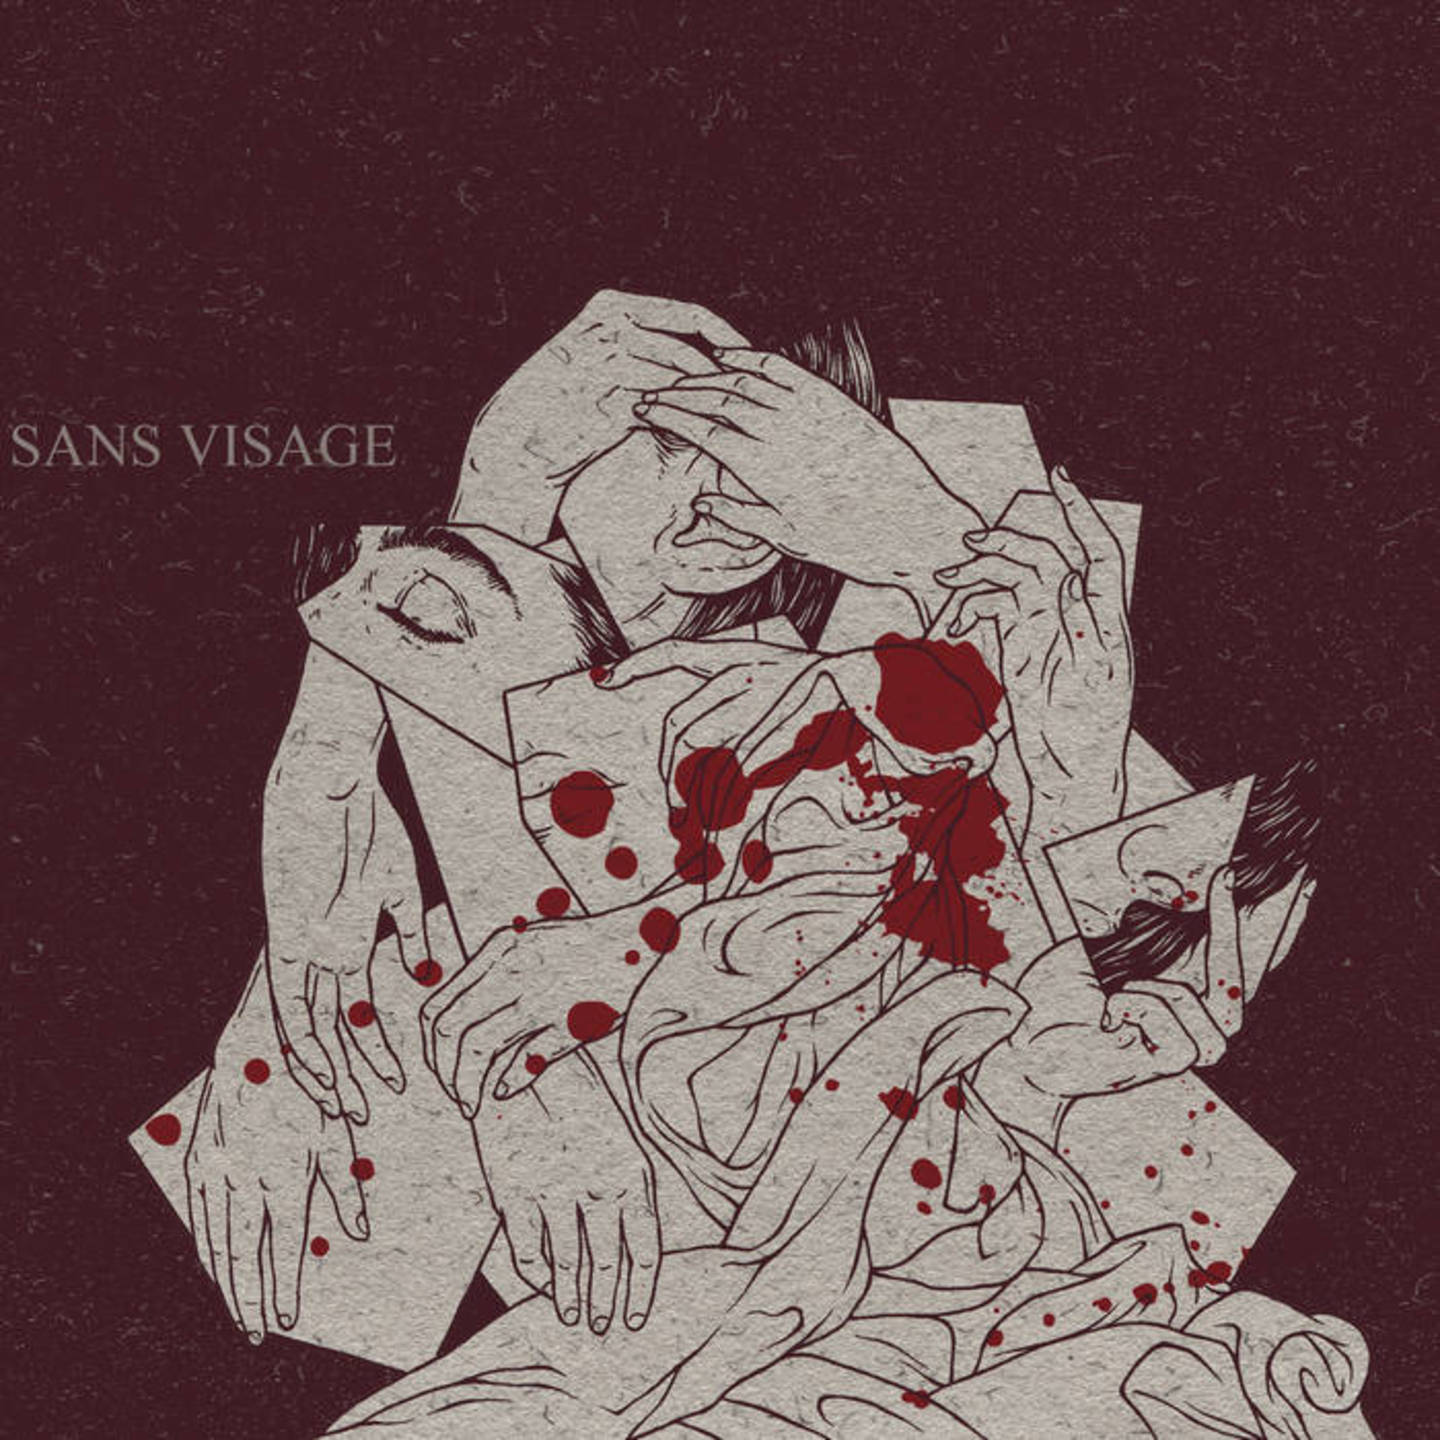 SANS VISAGE - Moments LP